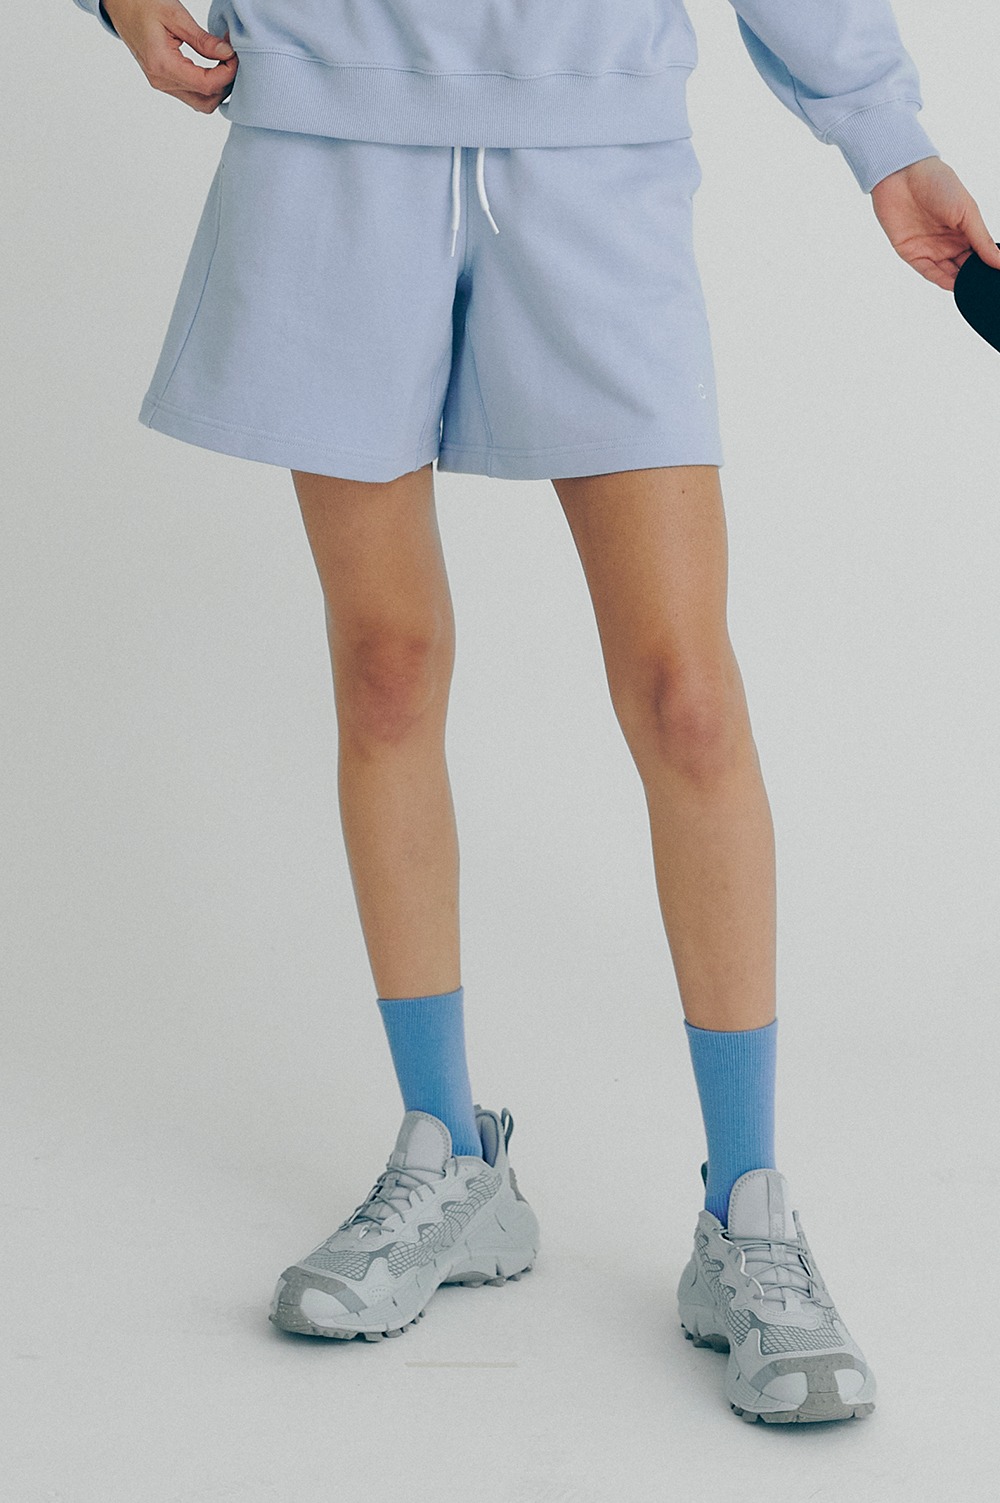 clove - [22SS clove] Active Half Shorts_Women (Sky Blue)